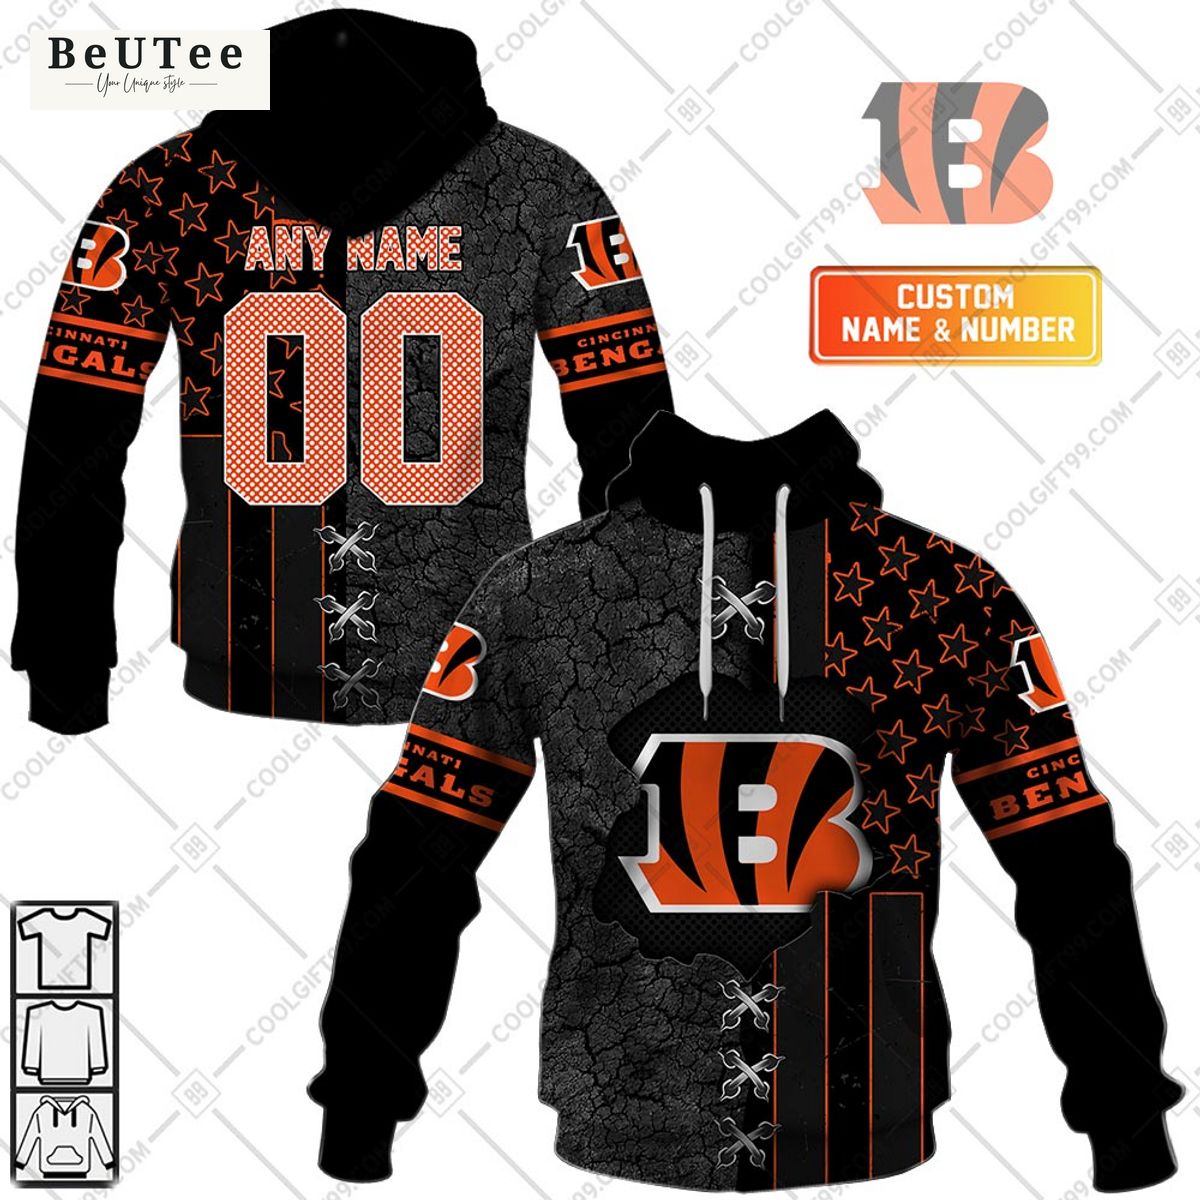 Cincinnati Bengals NFL personalized printed hoodie shirt Super sober